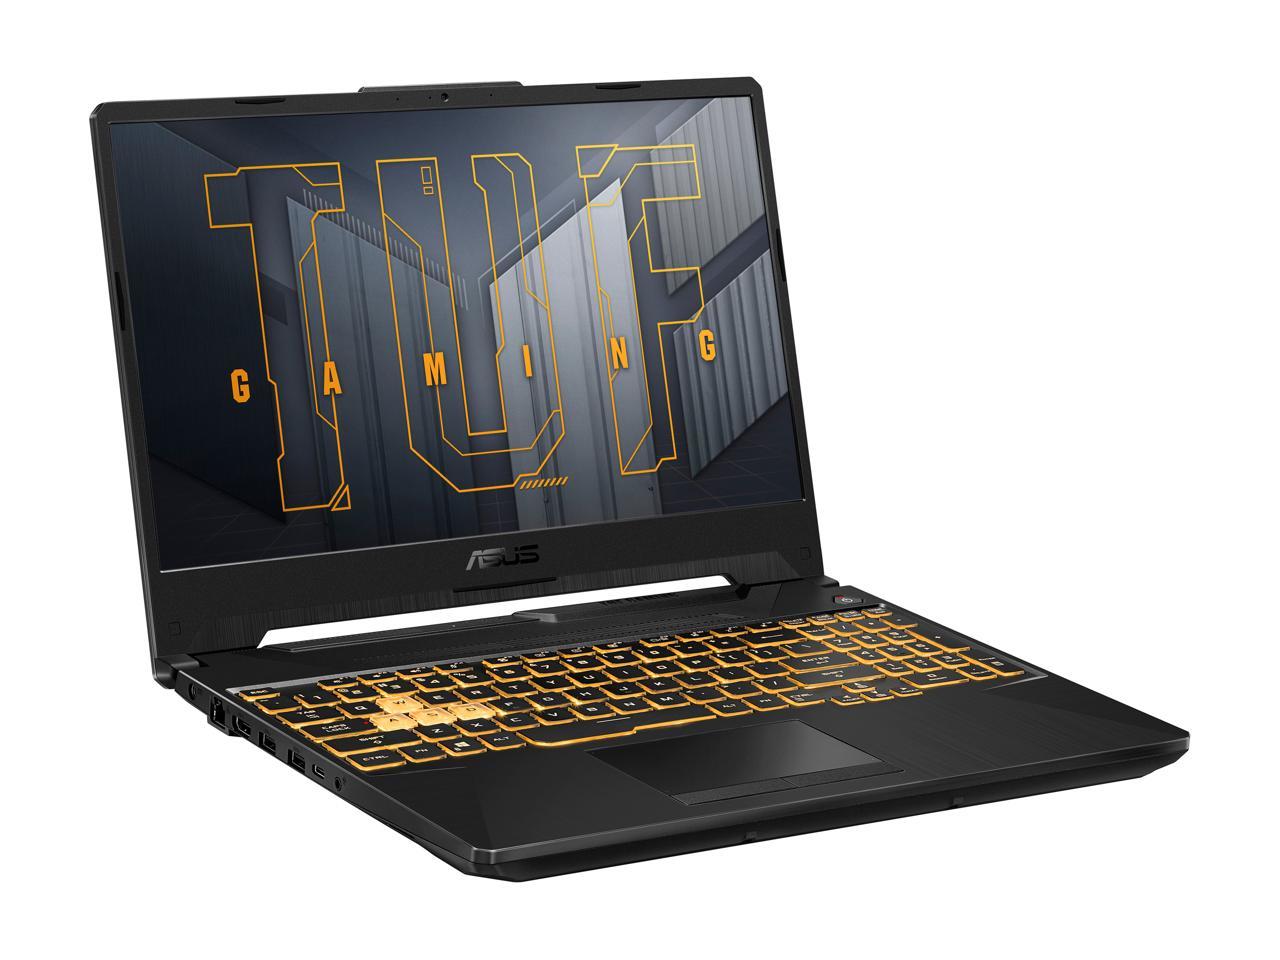 Asus Tuf Gaming F15 Gaming Laptop 156 144hz Fhd Ips Type Display